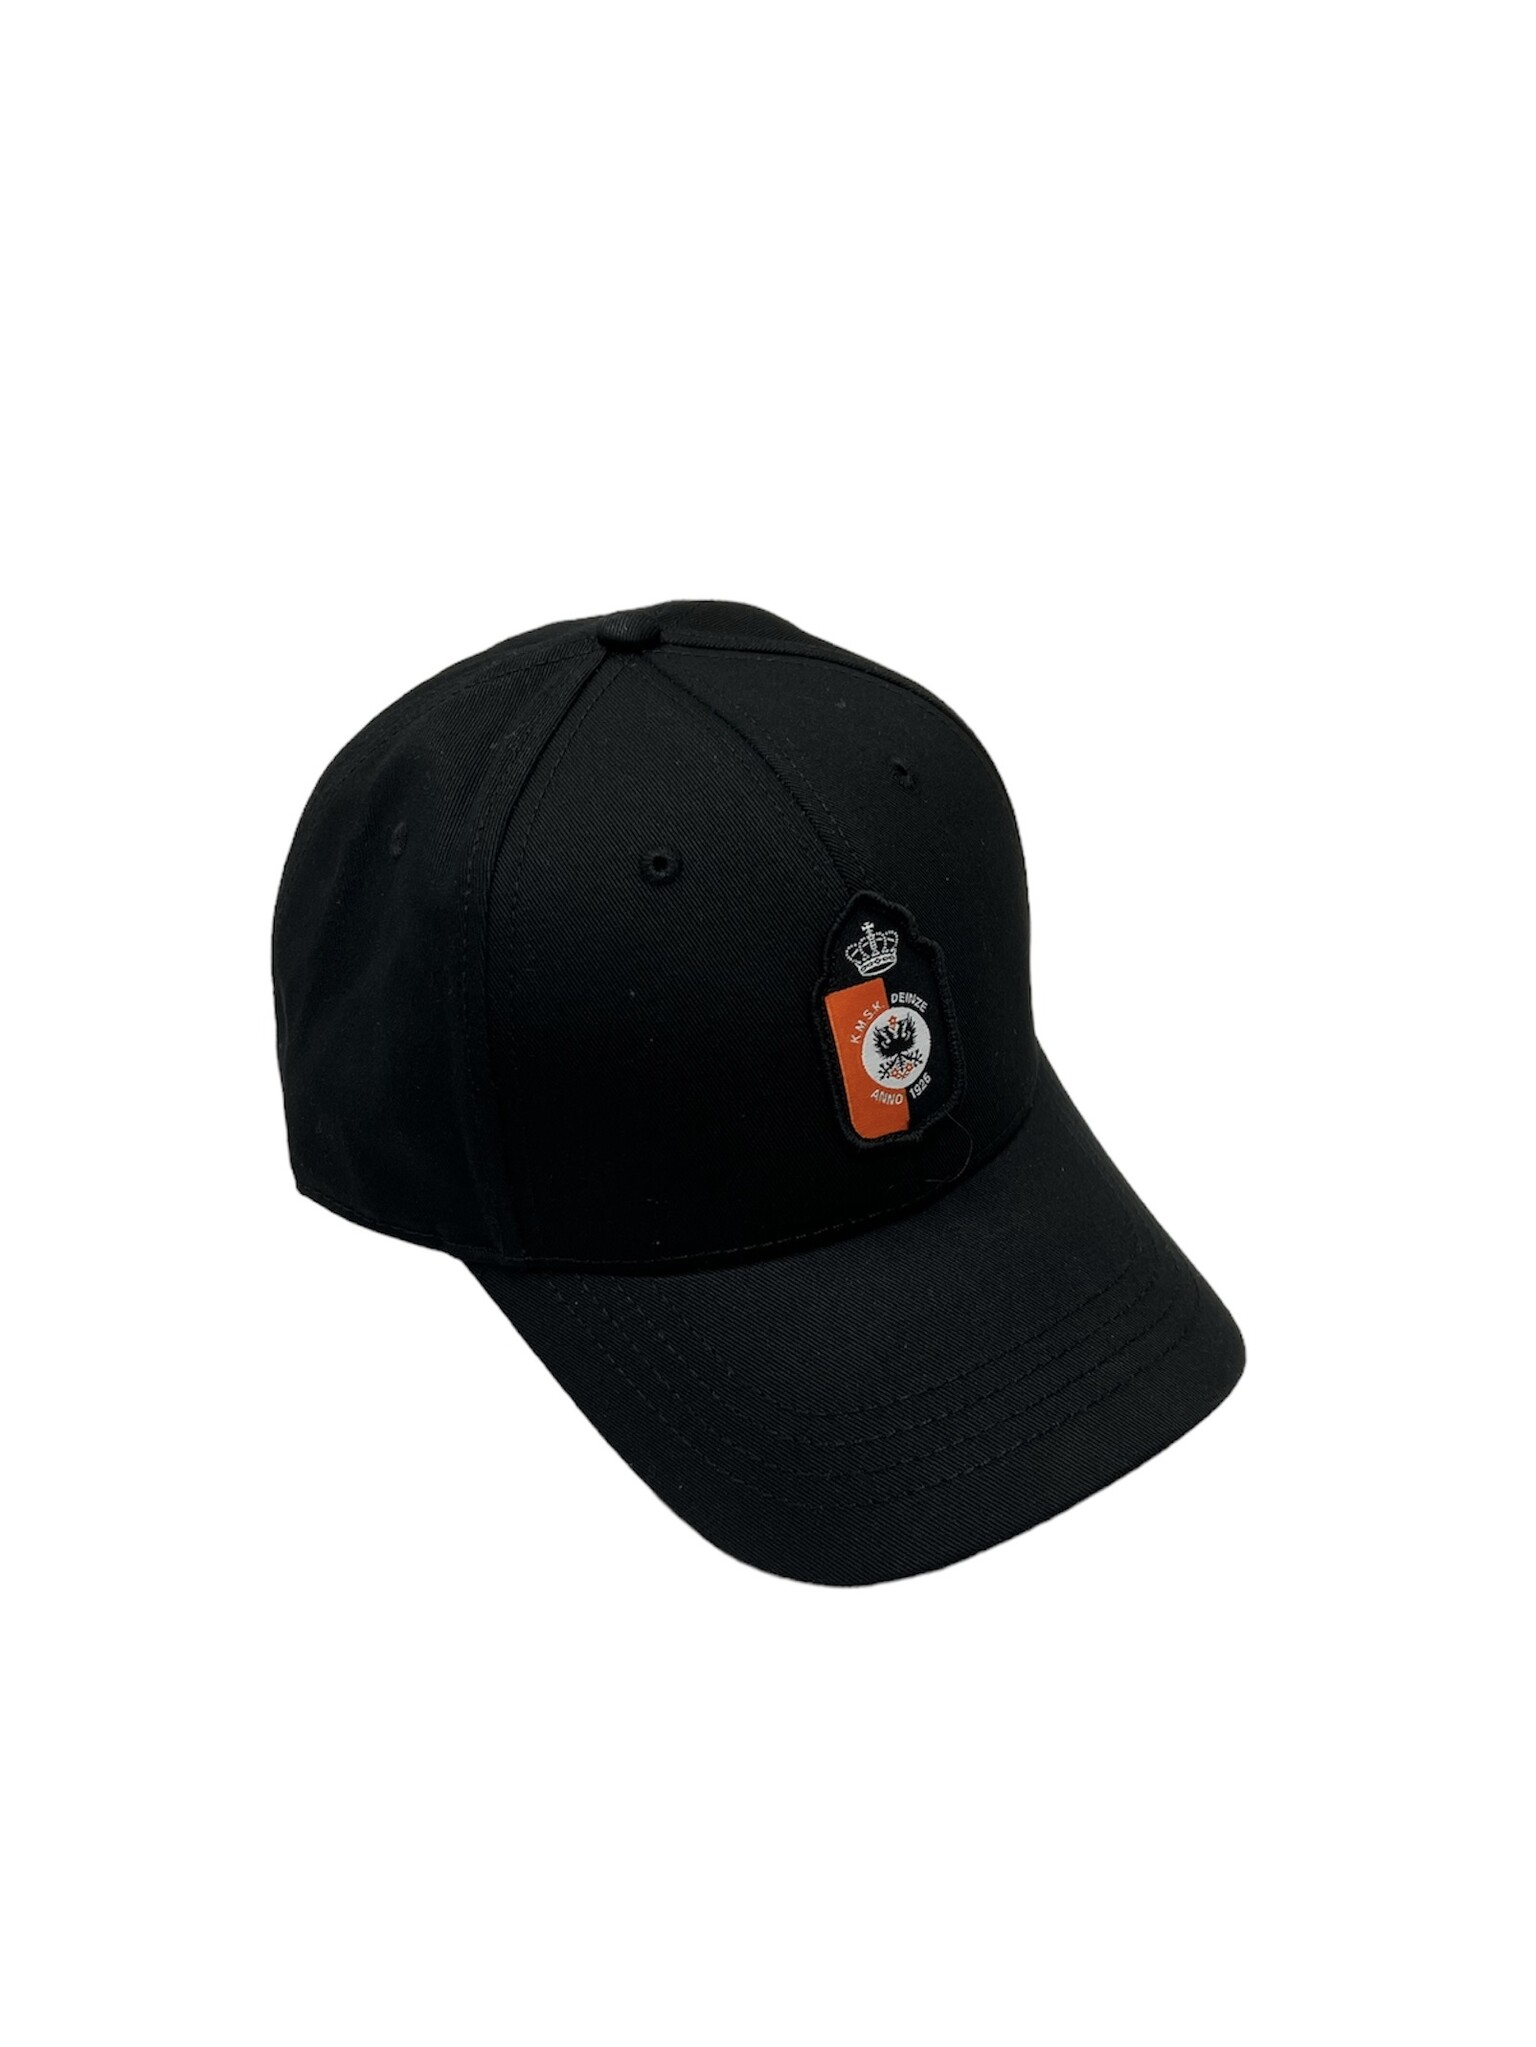 Topfanz Black cap with logo KMSK Deinze